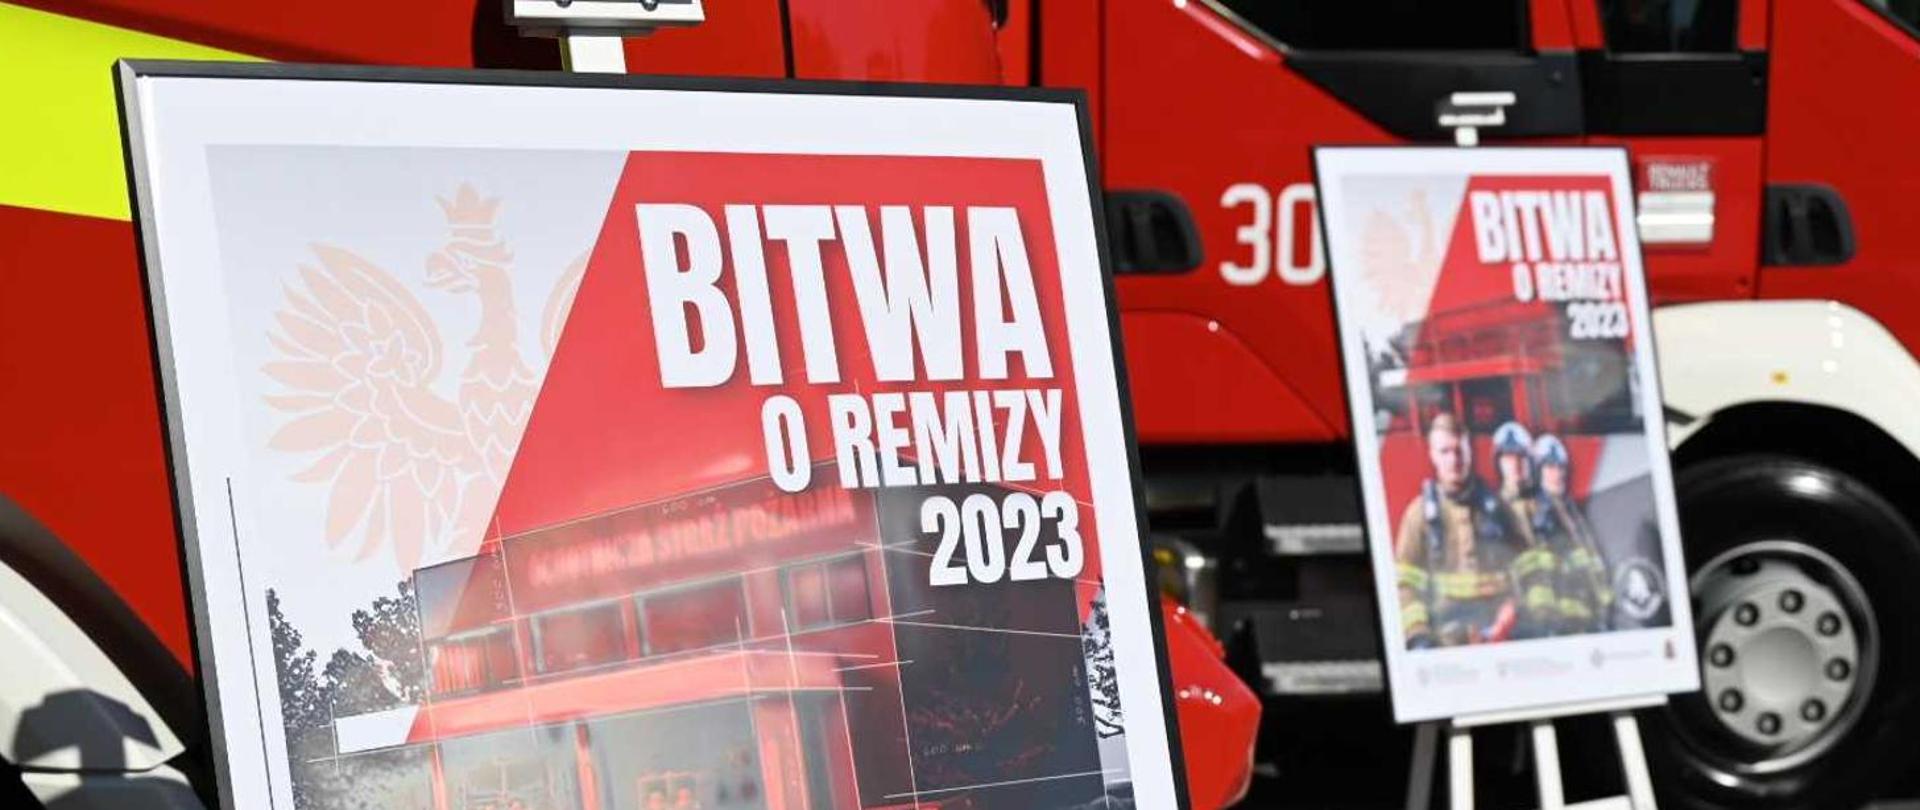 Dwa plakaty promocyjne "Bitwa o remizy 2023" na tle pojazdów pożarniczych